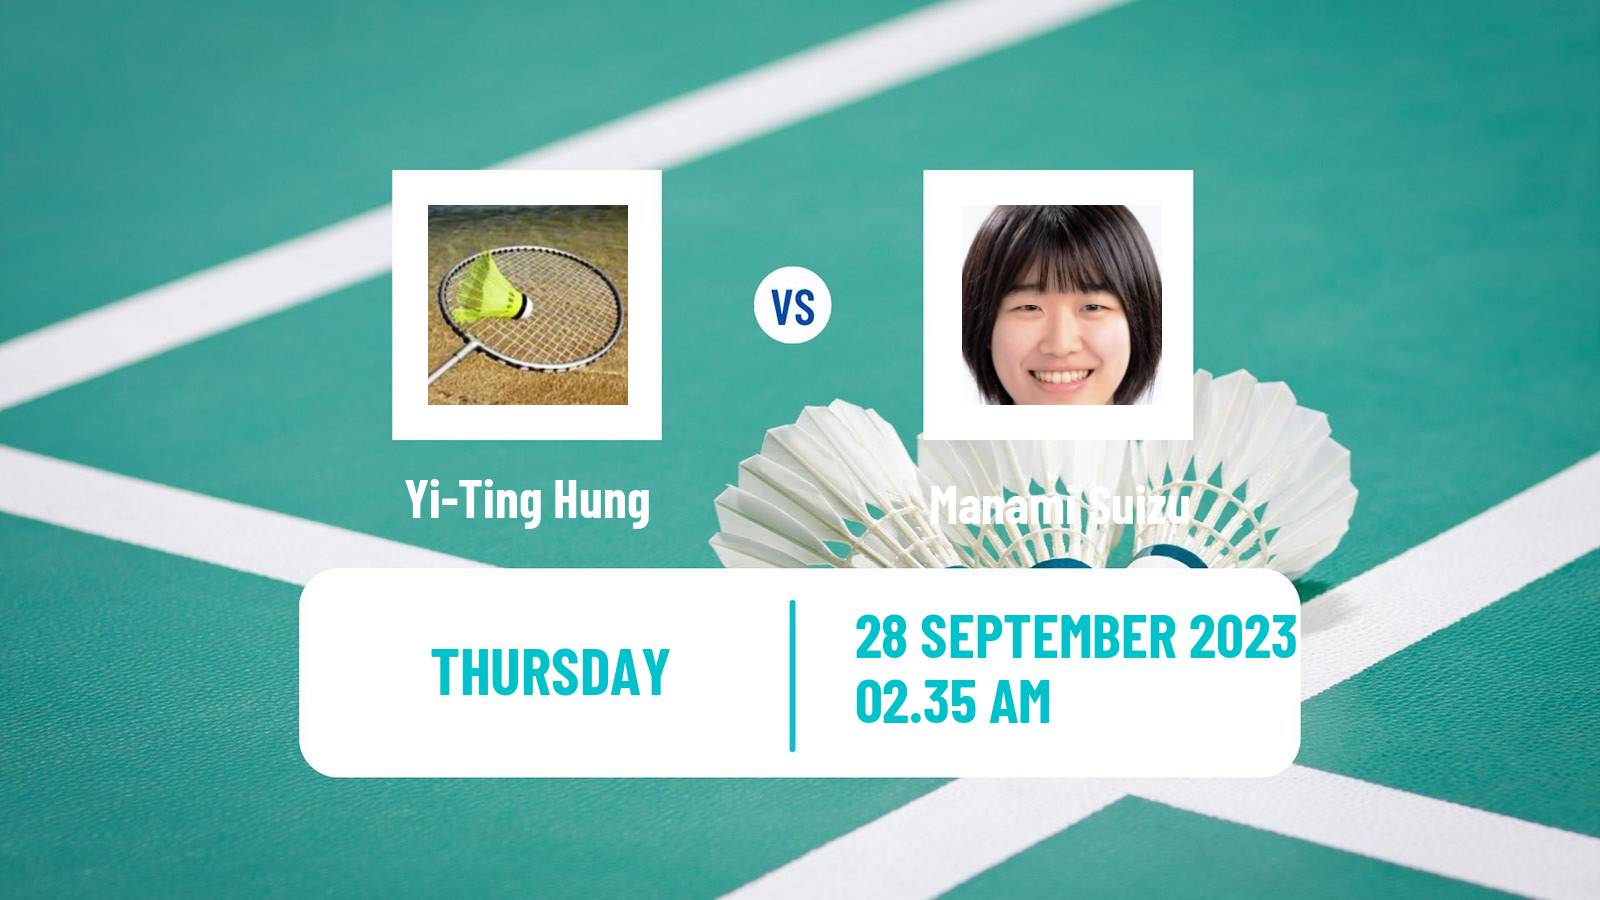 Badminton BWF World Tour Kaohsiung Masters Women Yi-Ting Hung - Manami Suizu